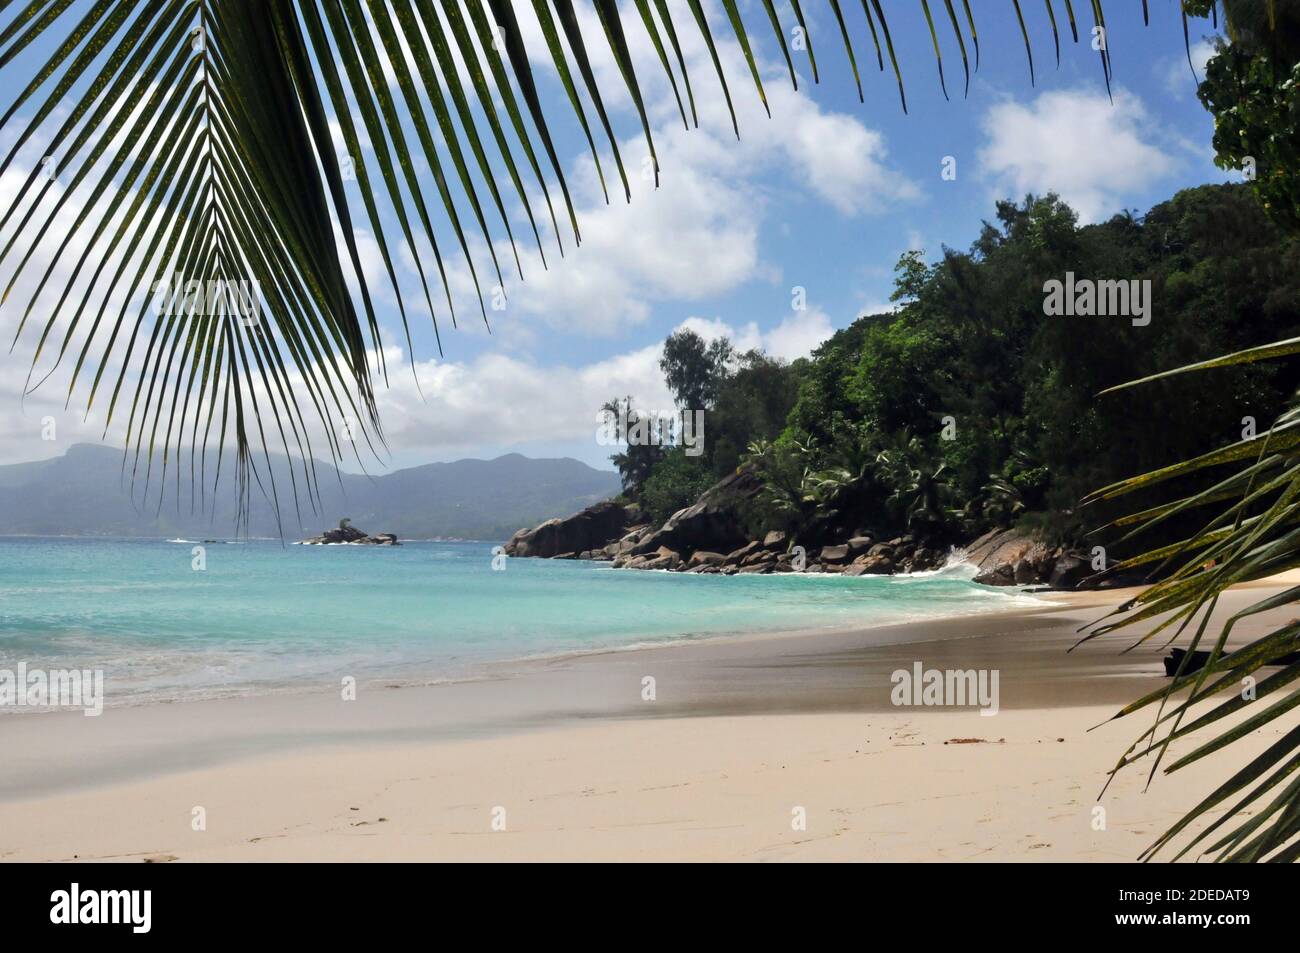 Plage d'Anse Soleil sur l'île de Mahé, Seychelles - Strand Seychelles Banque D'Images